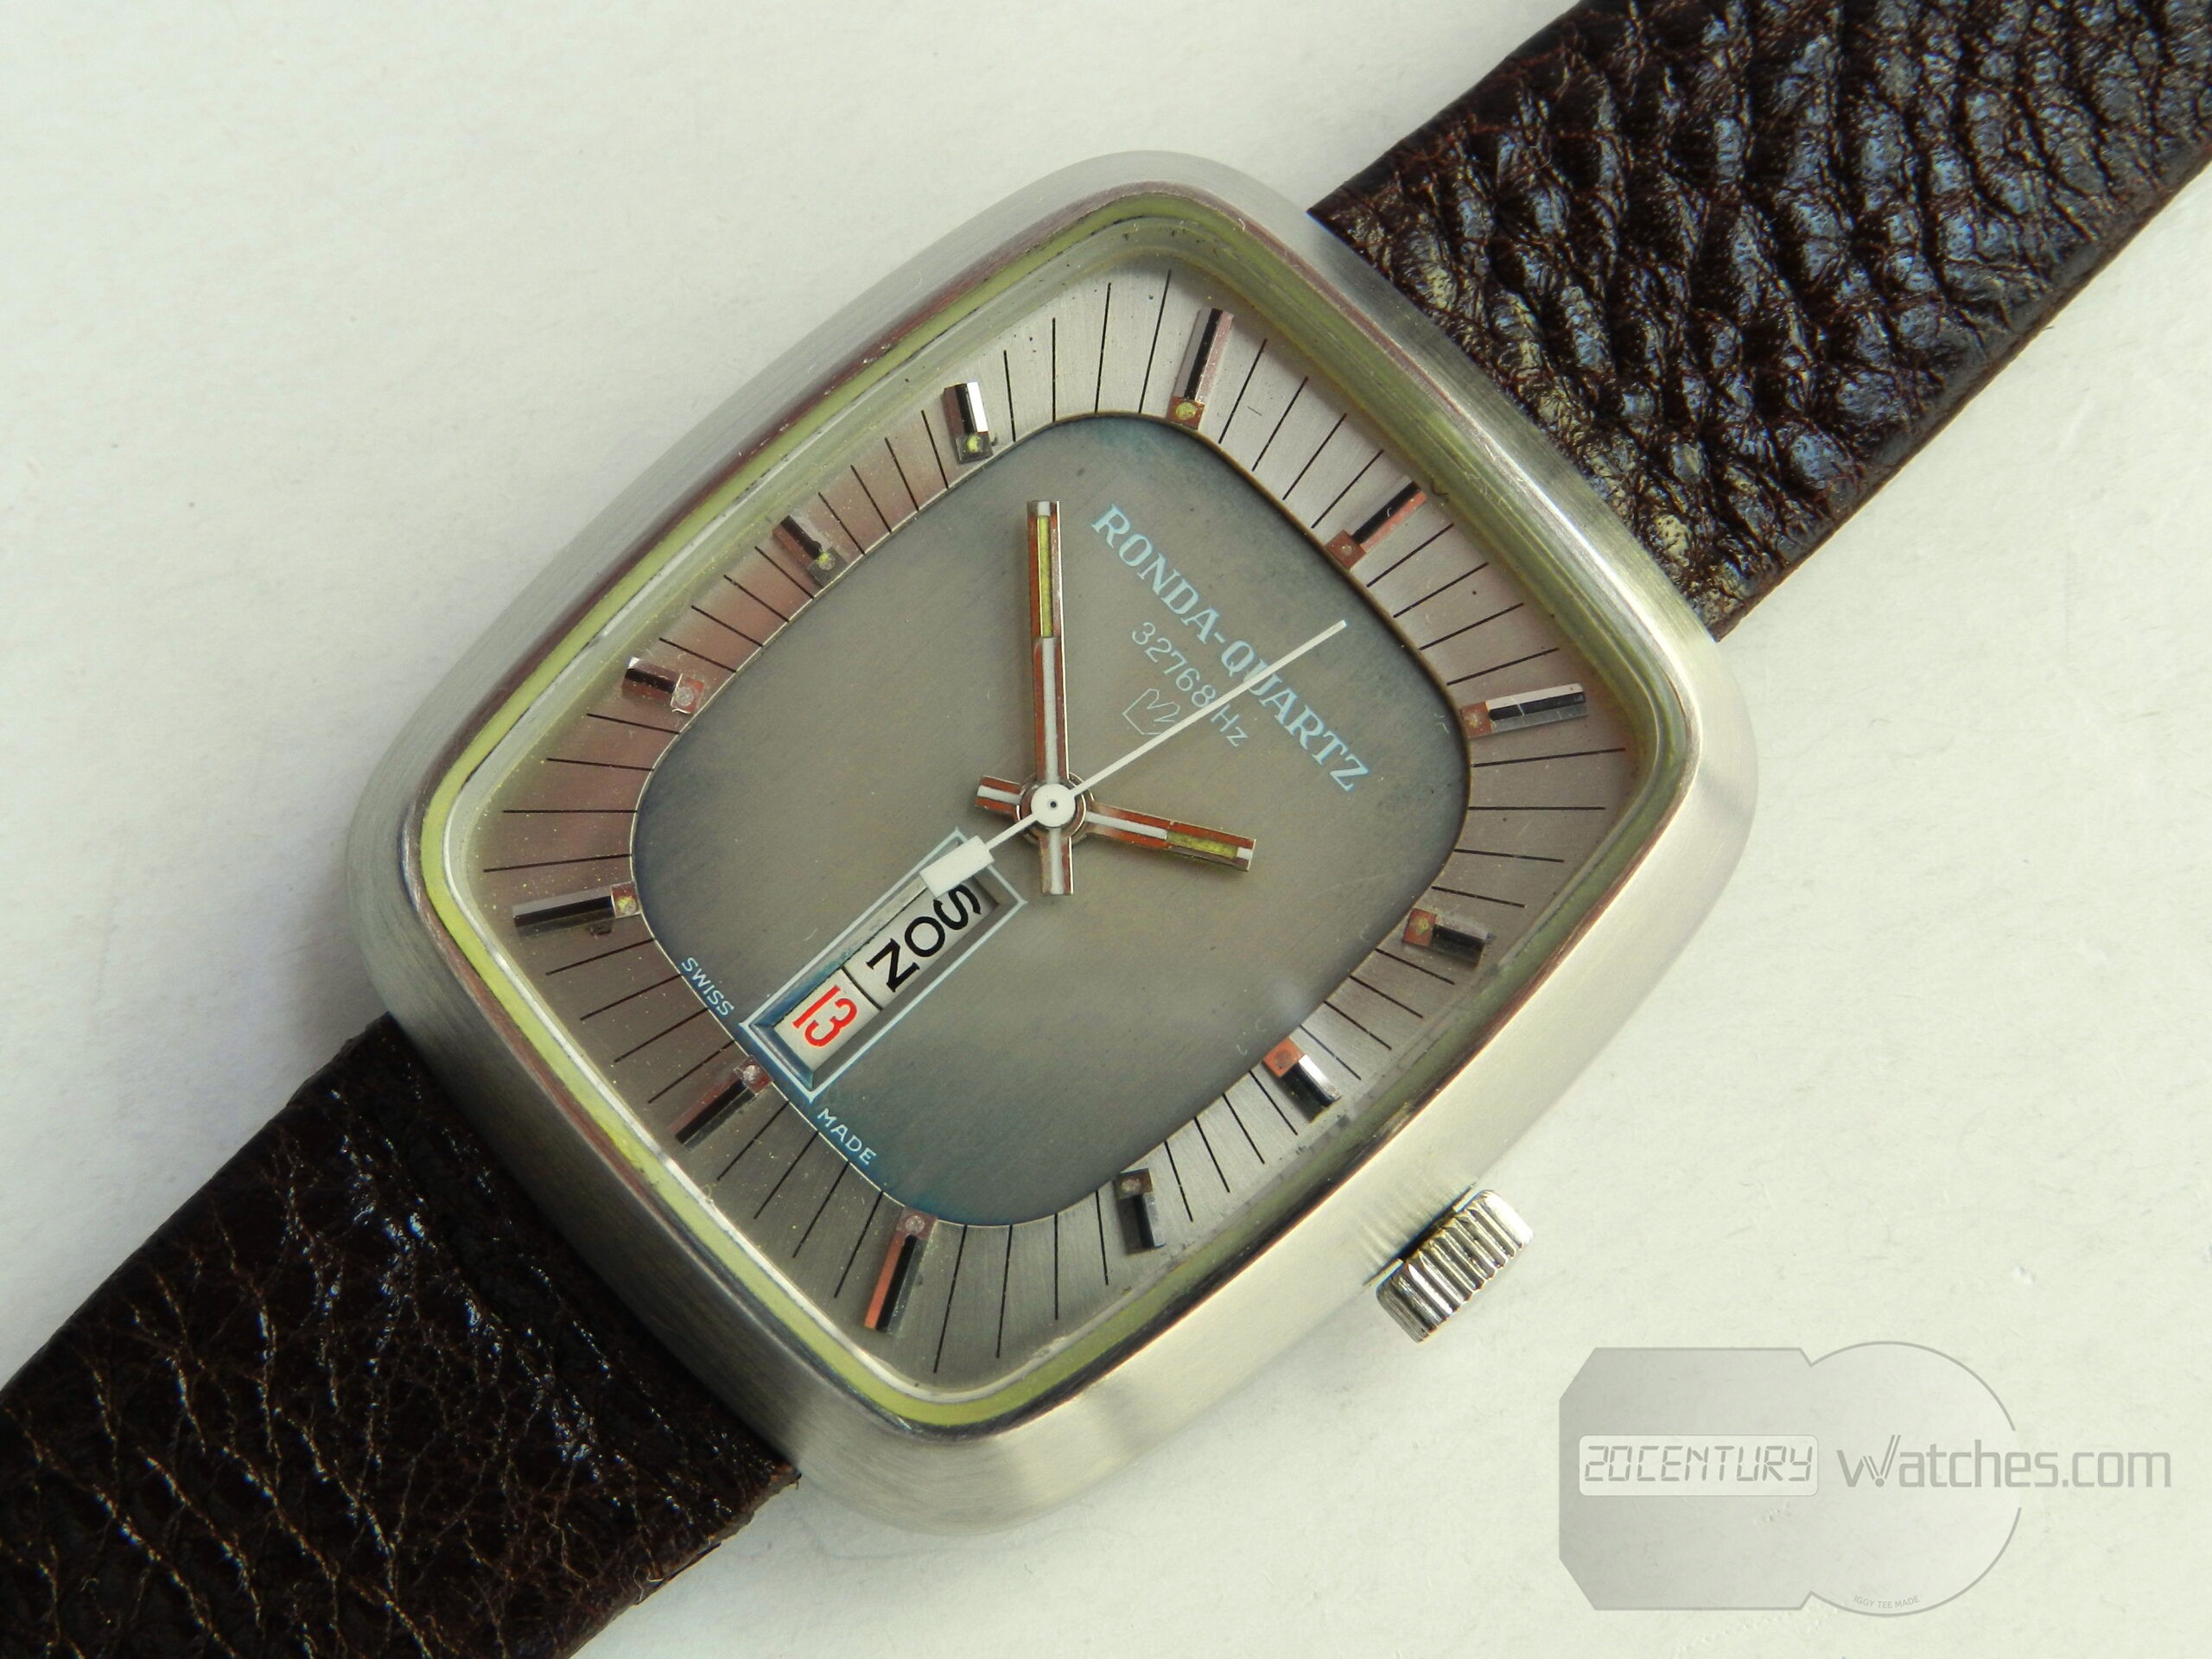 Ronda Quartz 32768 Hz – 20th Century Watches